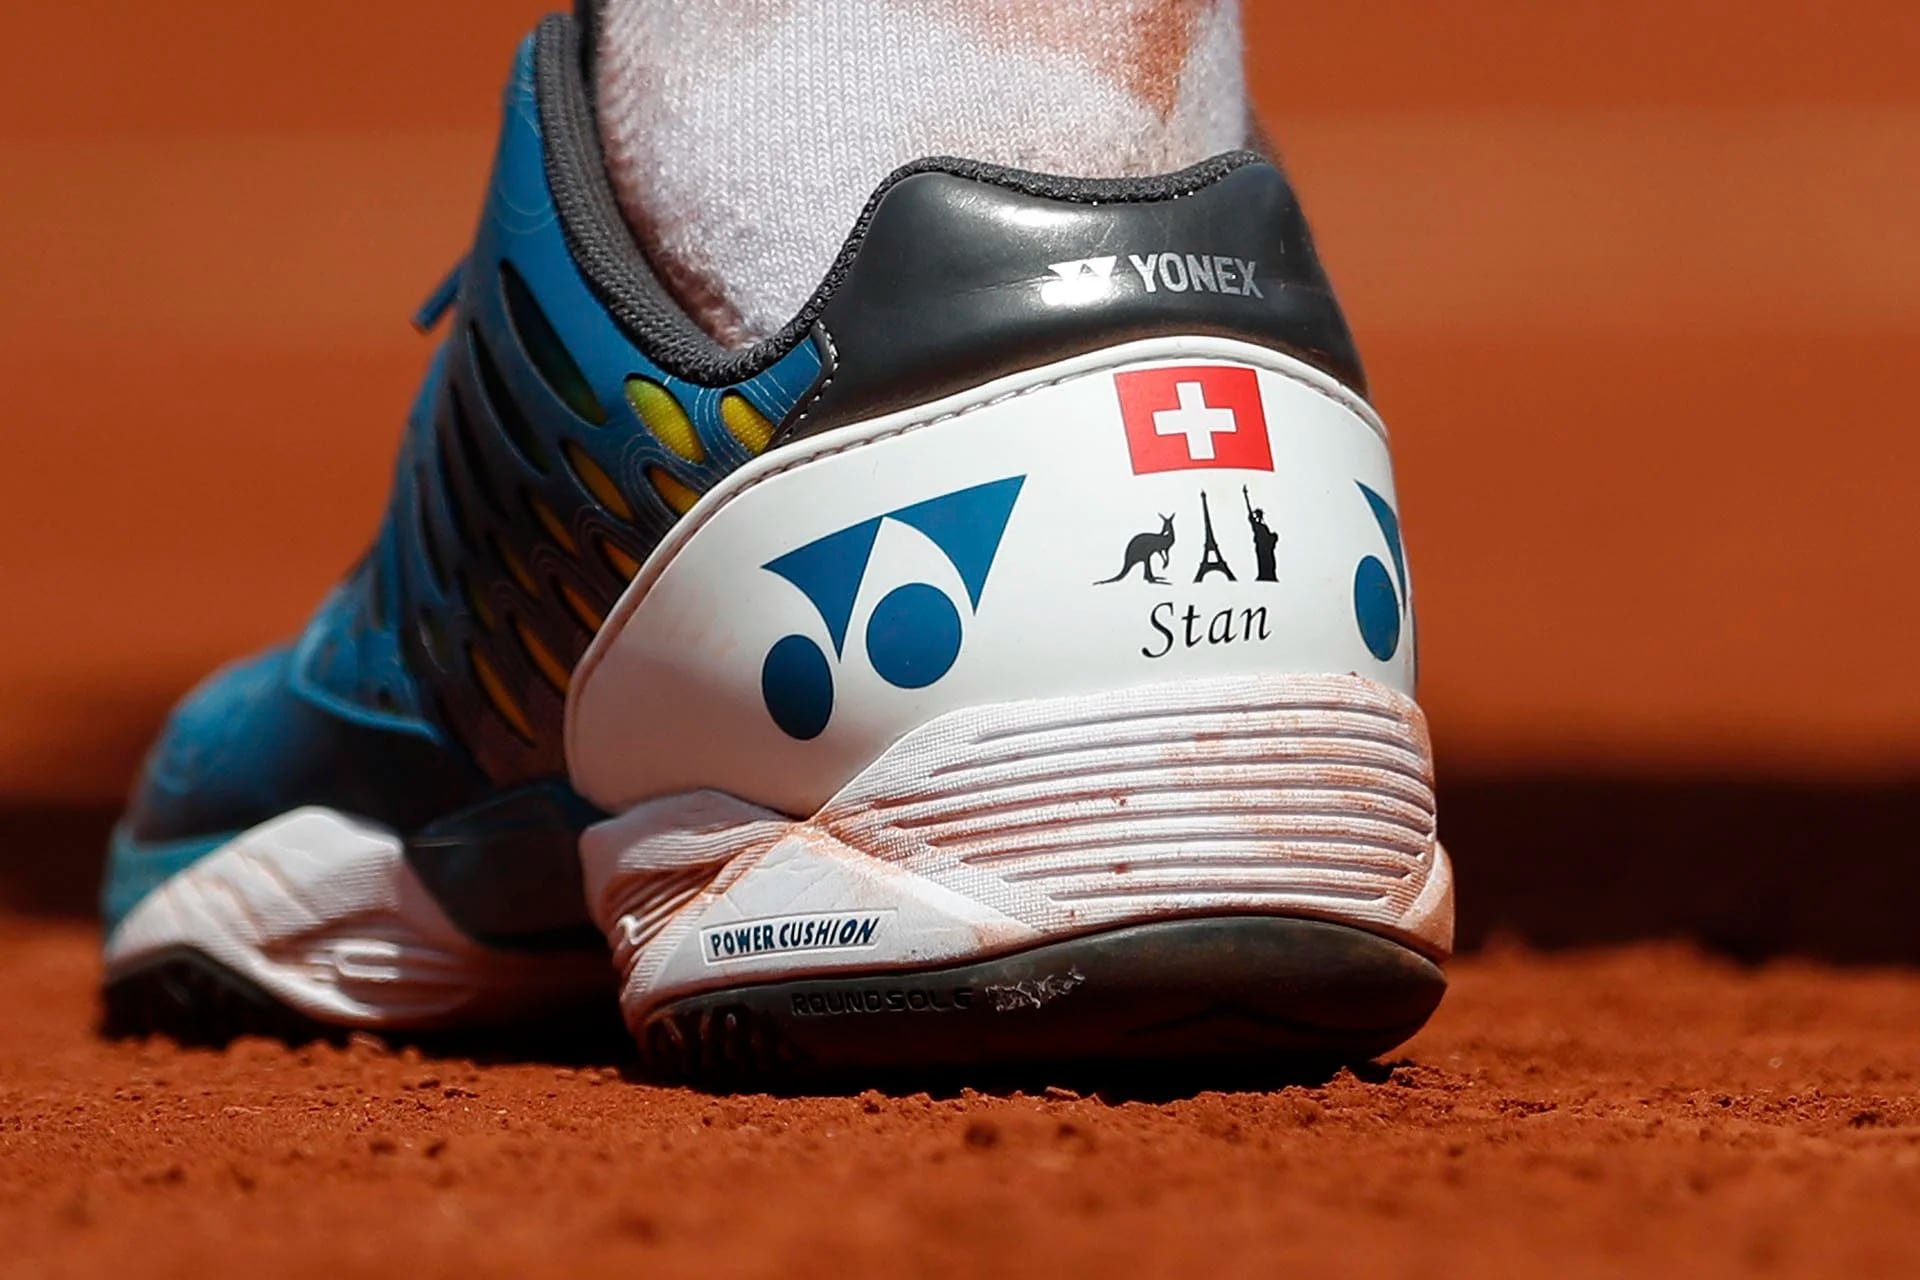 Las zapatillas del tenista suizo Stan Wawrinka en la seminifinal de Roland Garros lucen su nombre y las imágenes de un Wallaby, la Torre Eiffel y la Estatua de la Libertad por los tres lugares donde ganó títulos Grand Slam